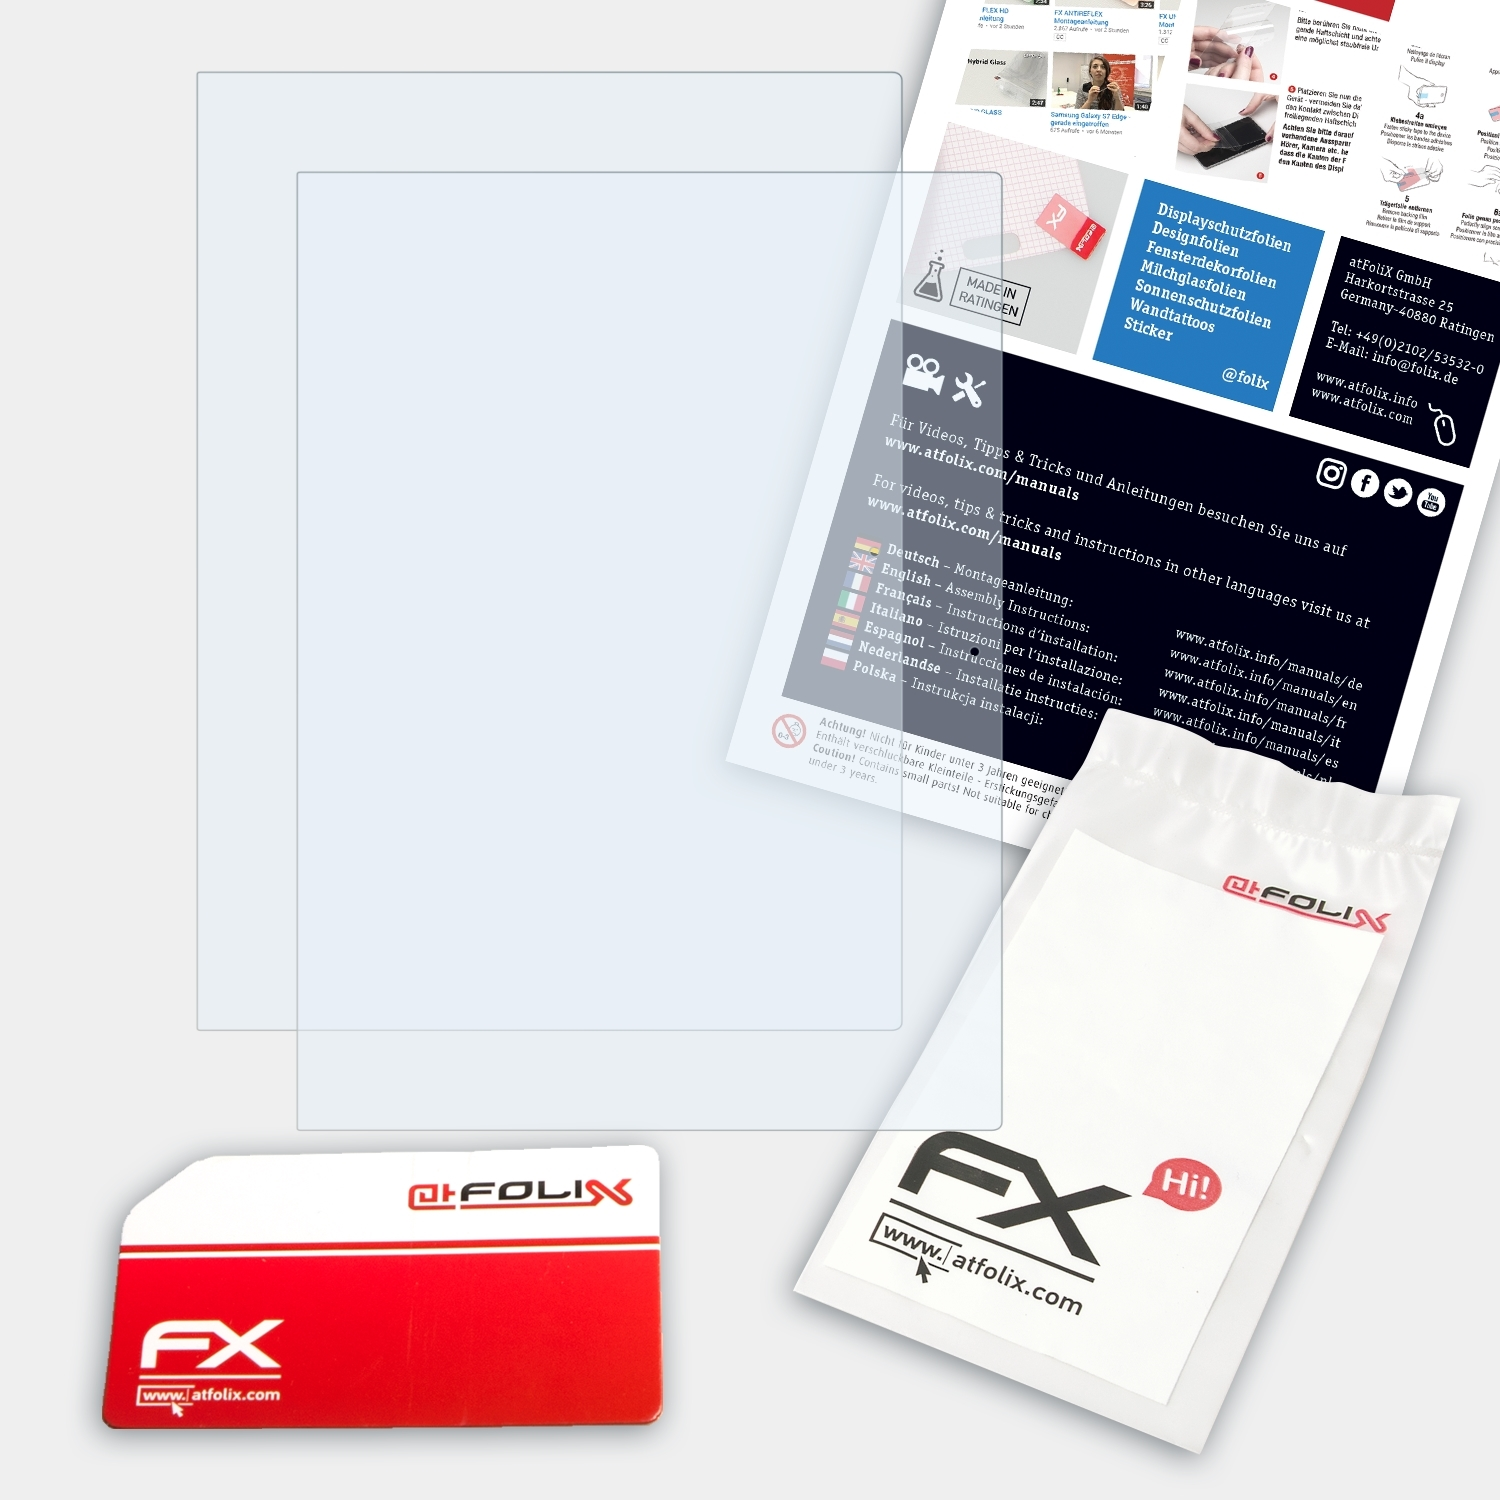 ATFOLIX 2x FX-Clear Pixelbook) Displayschutz(für Google